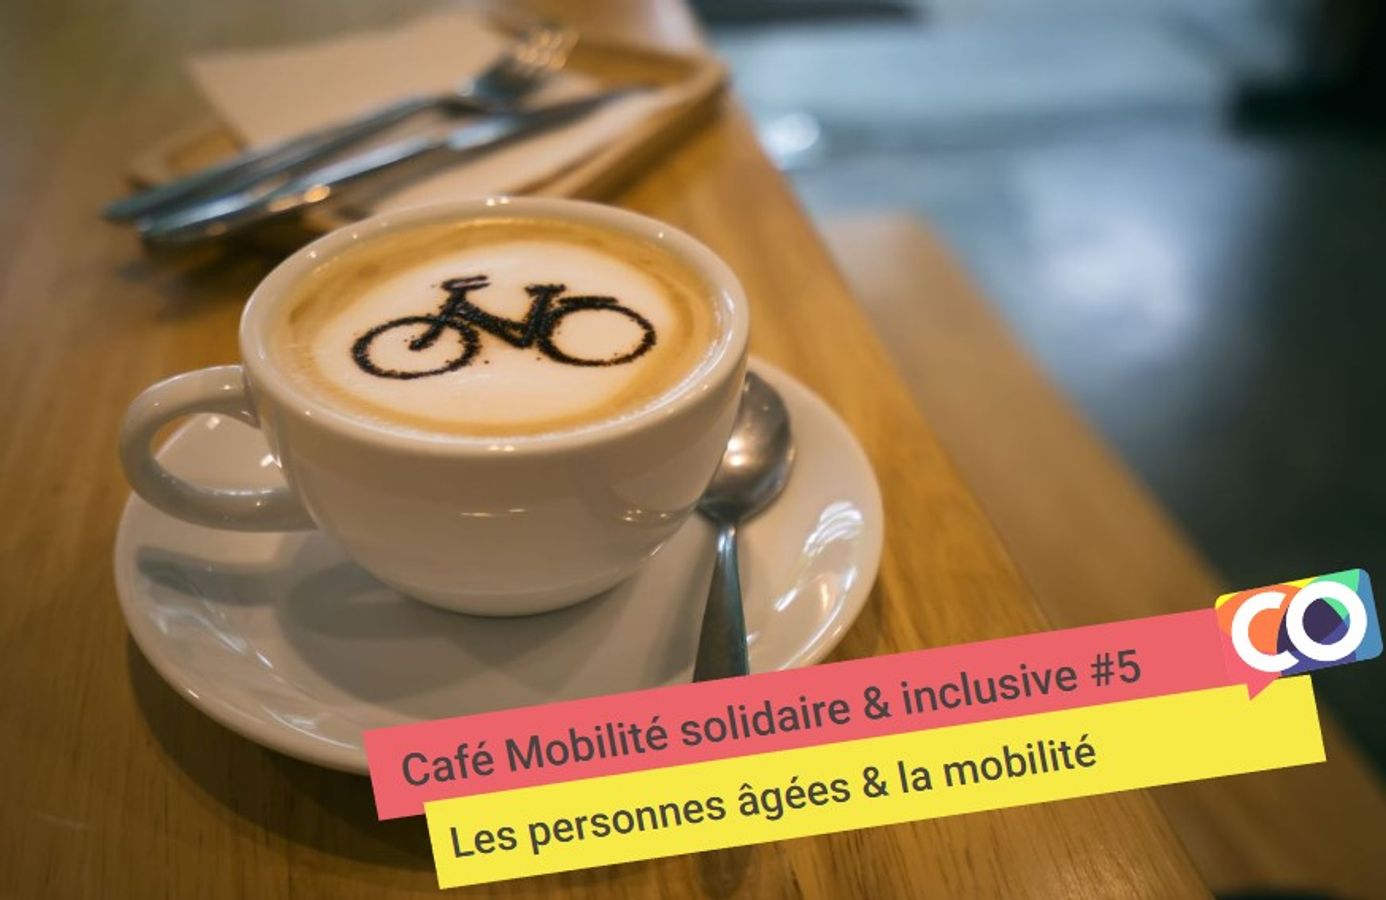 🗣 Café mobilité solidaire & inclusive: Mobilité des personnes âgées